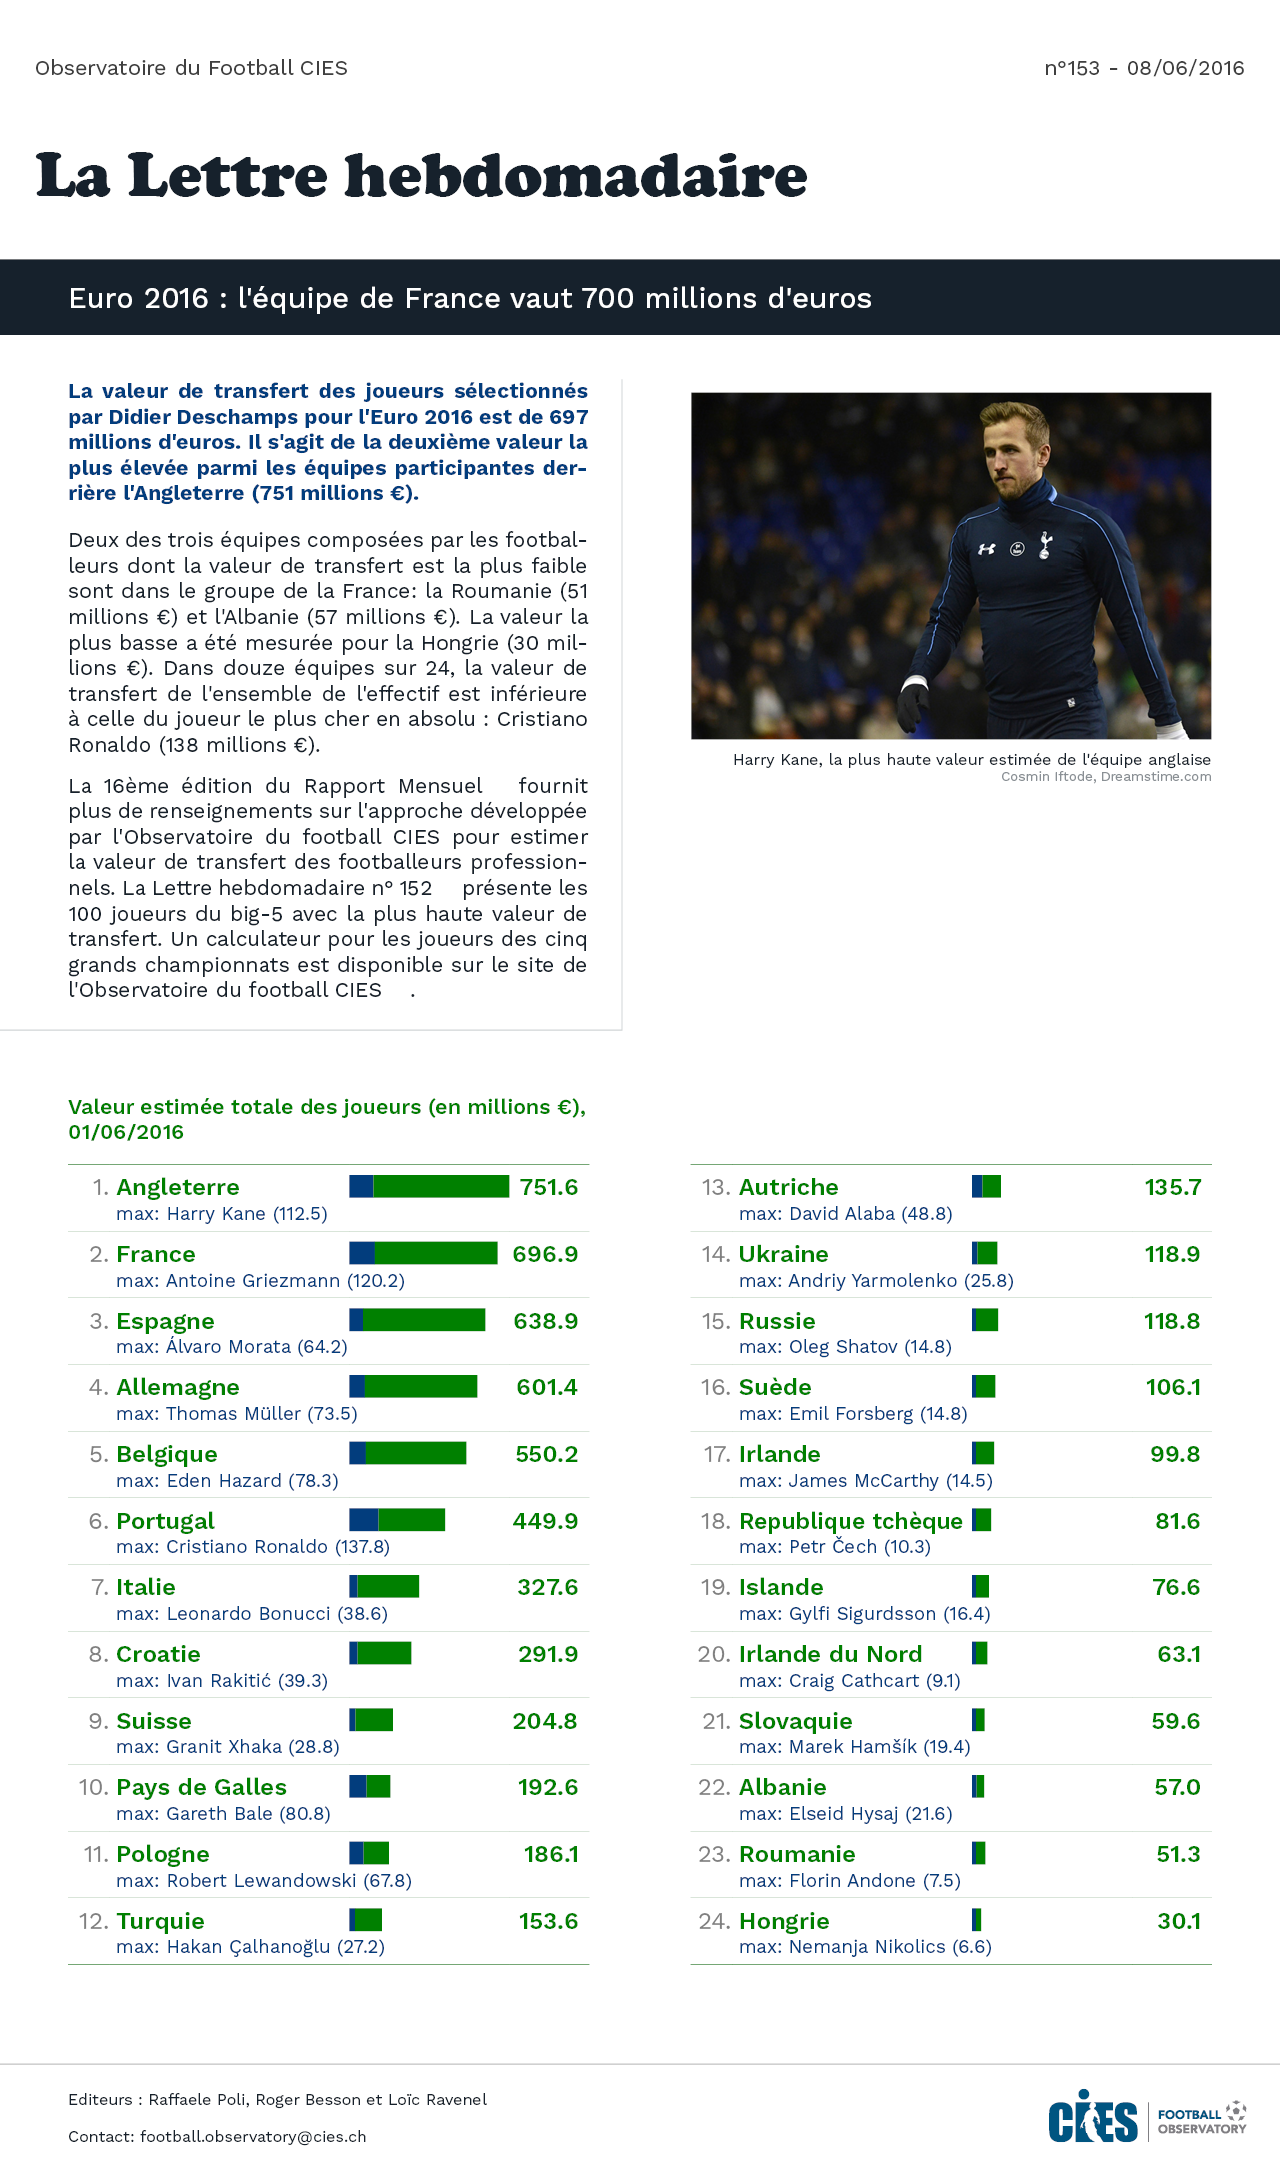 Tableau: Valeur estimée totale des joueurs de l'effectif, équipes participant à l'Euro 2016